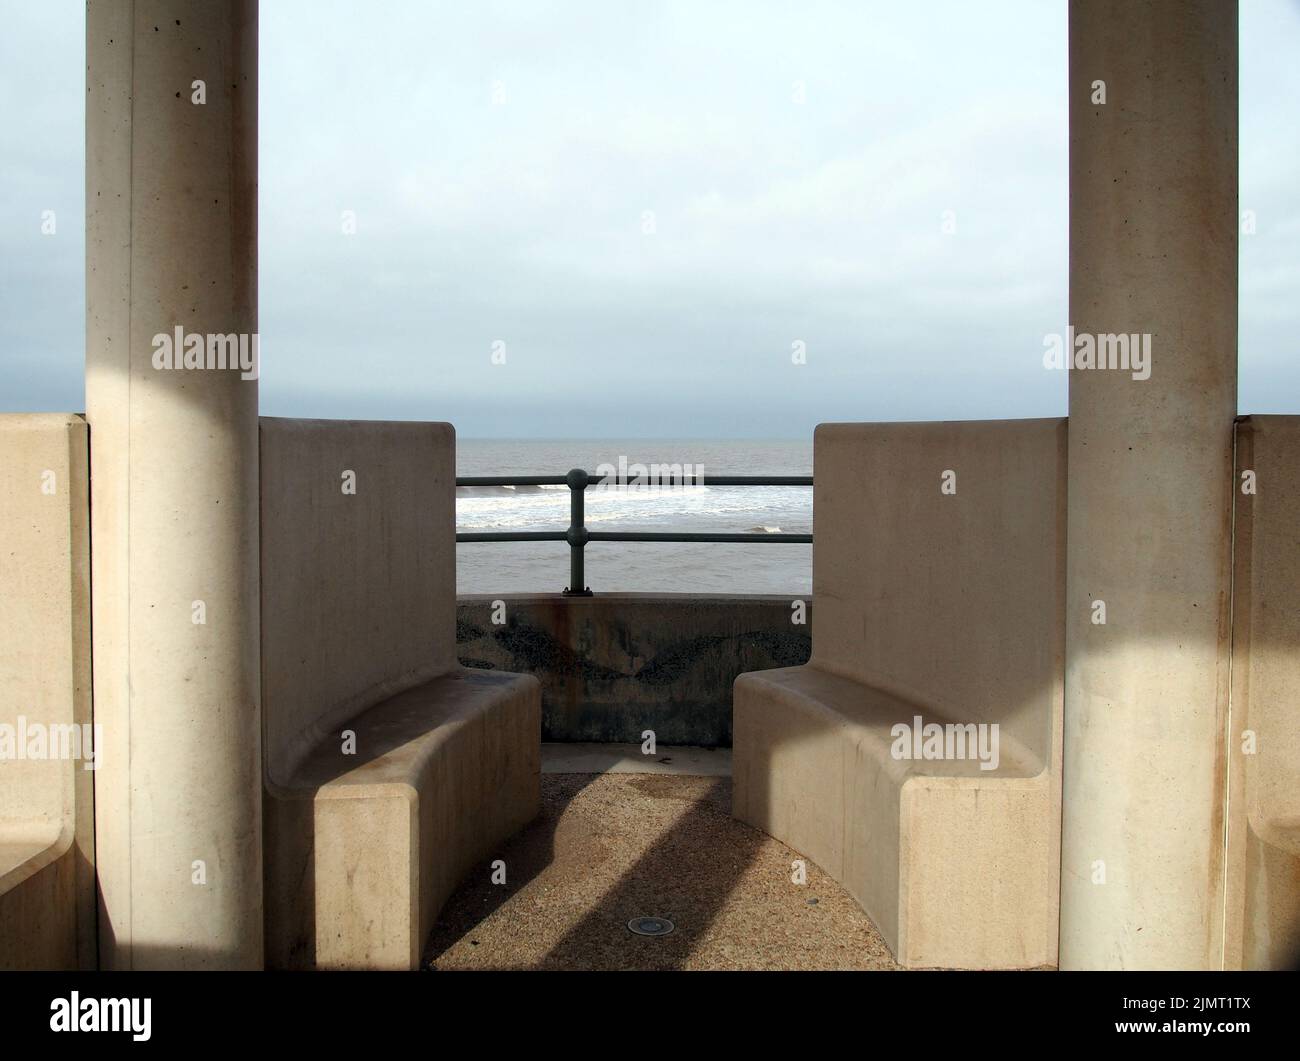 Posti a sedere in cemento in un rifugio fronte mare a cleveleys a merseyside Foto Stock